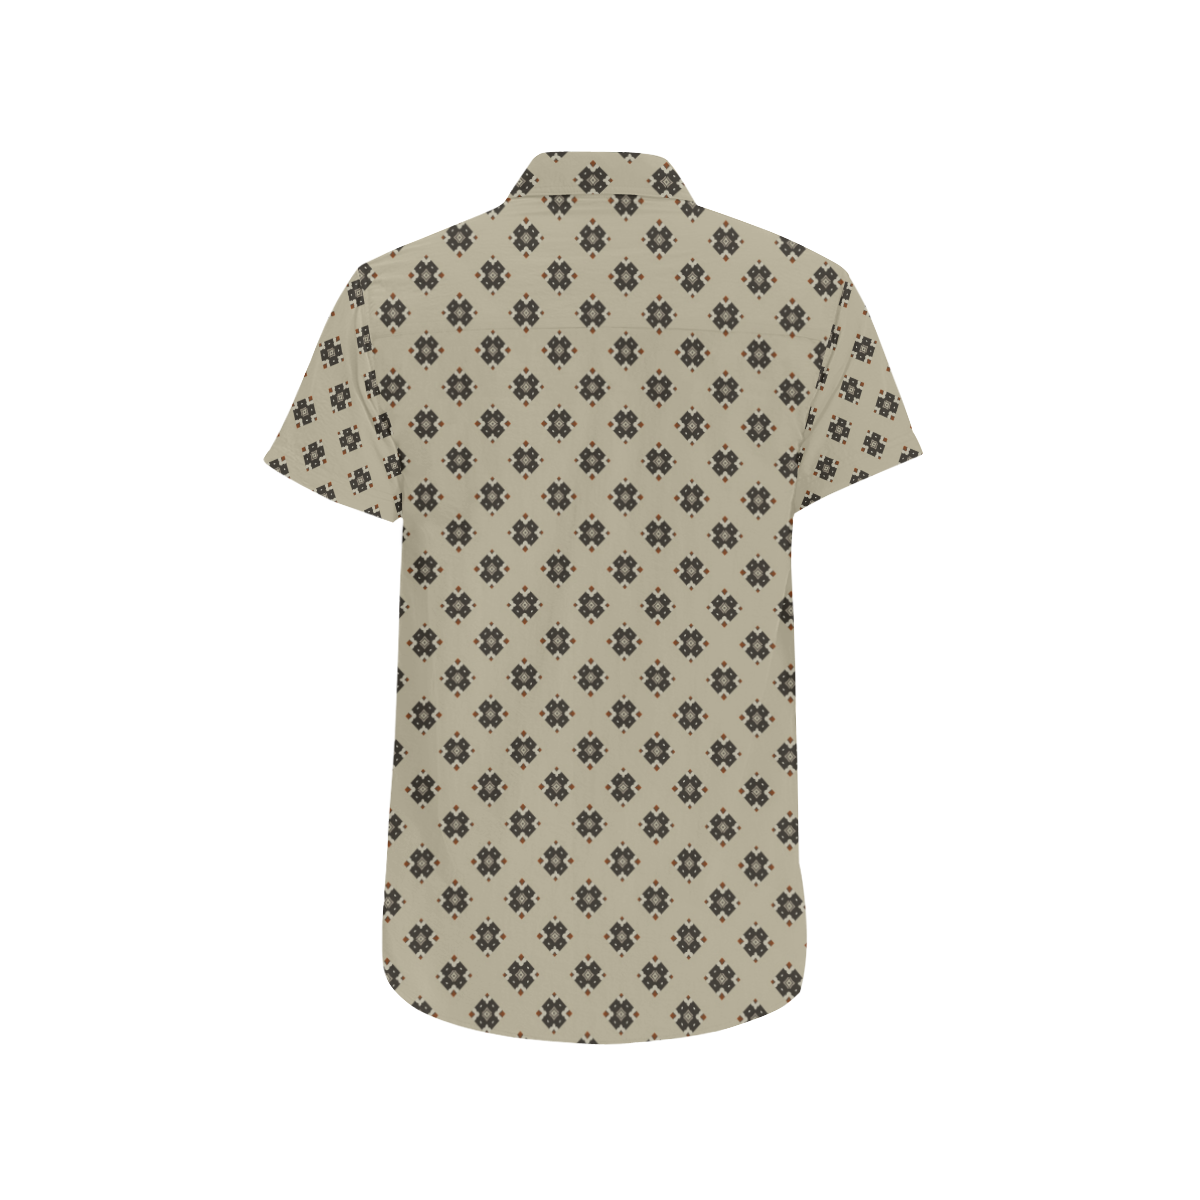 Model #148c| Men's All Over Print Short Sleeve Shirt (Model T53)